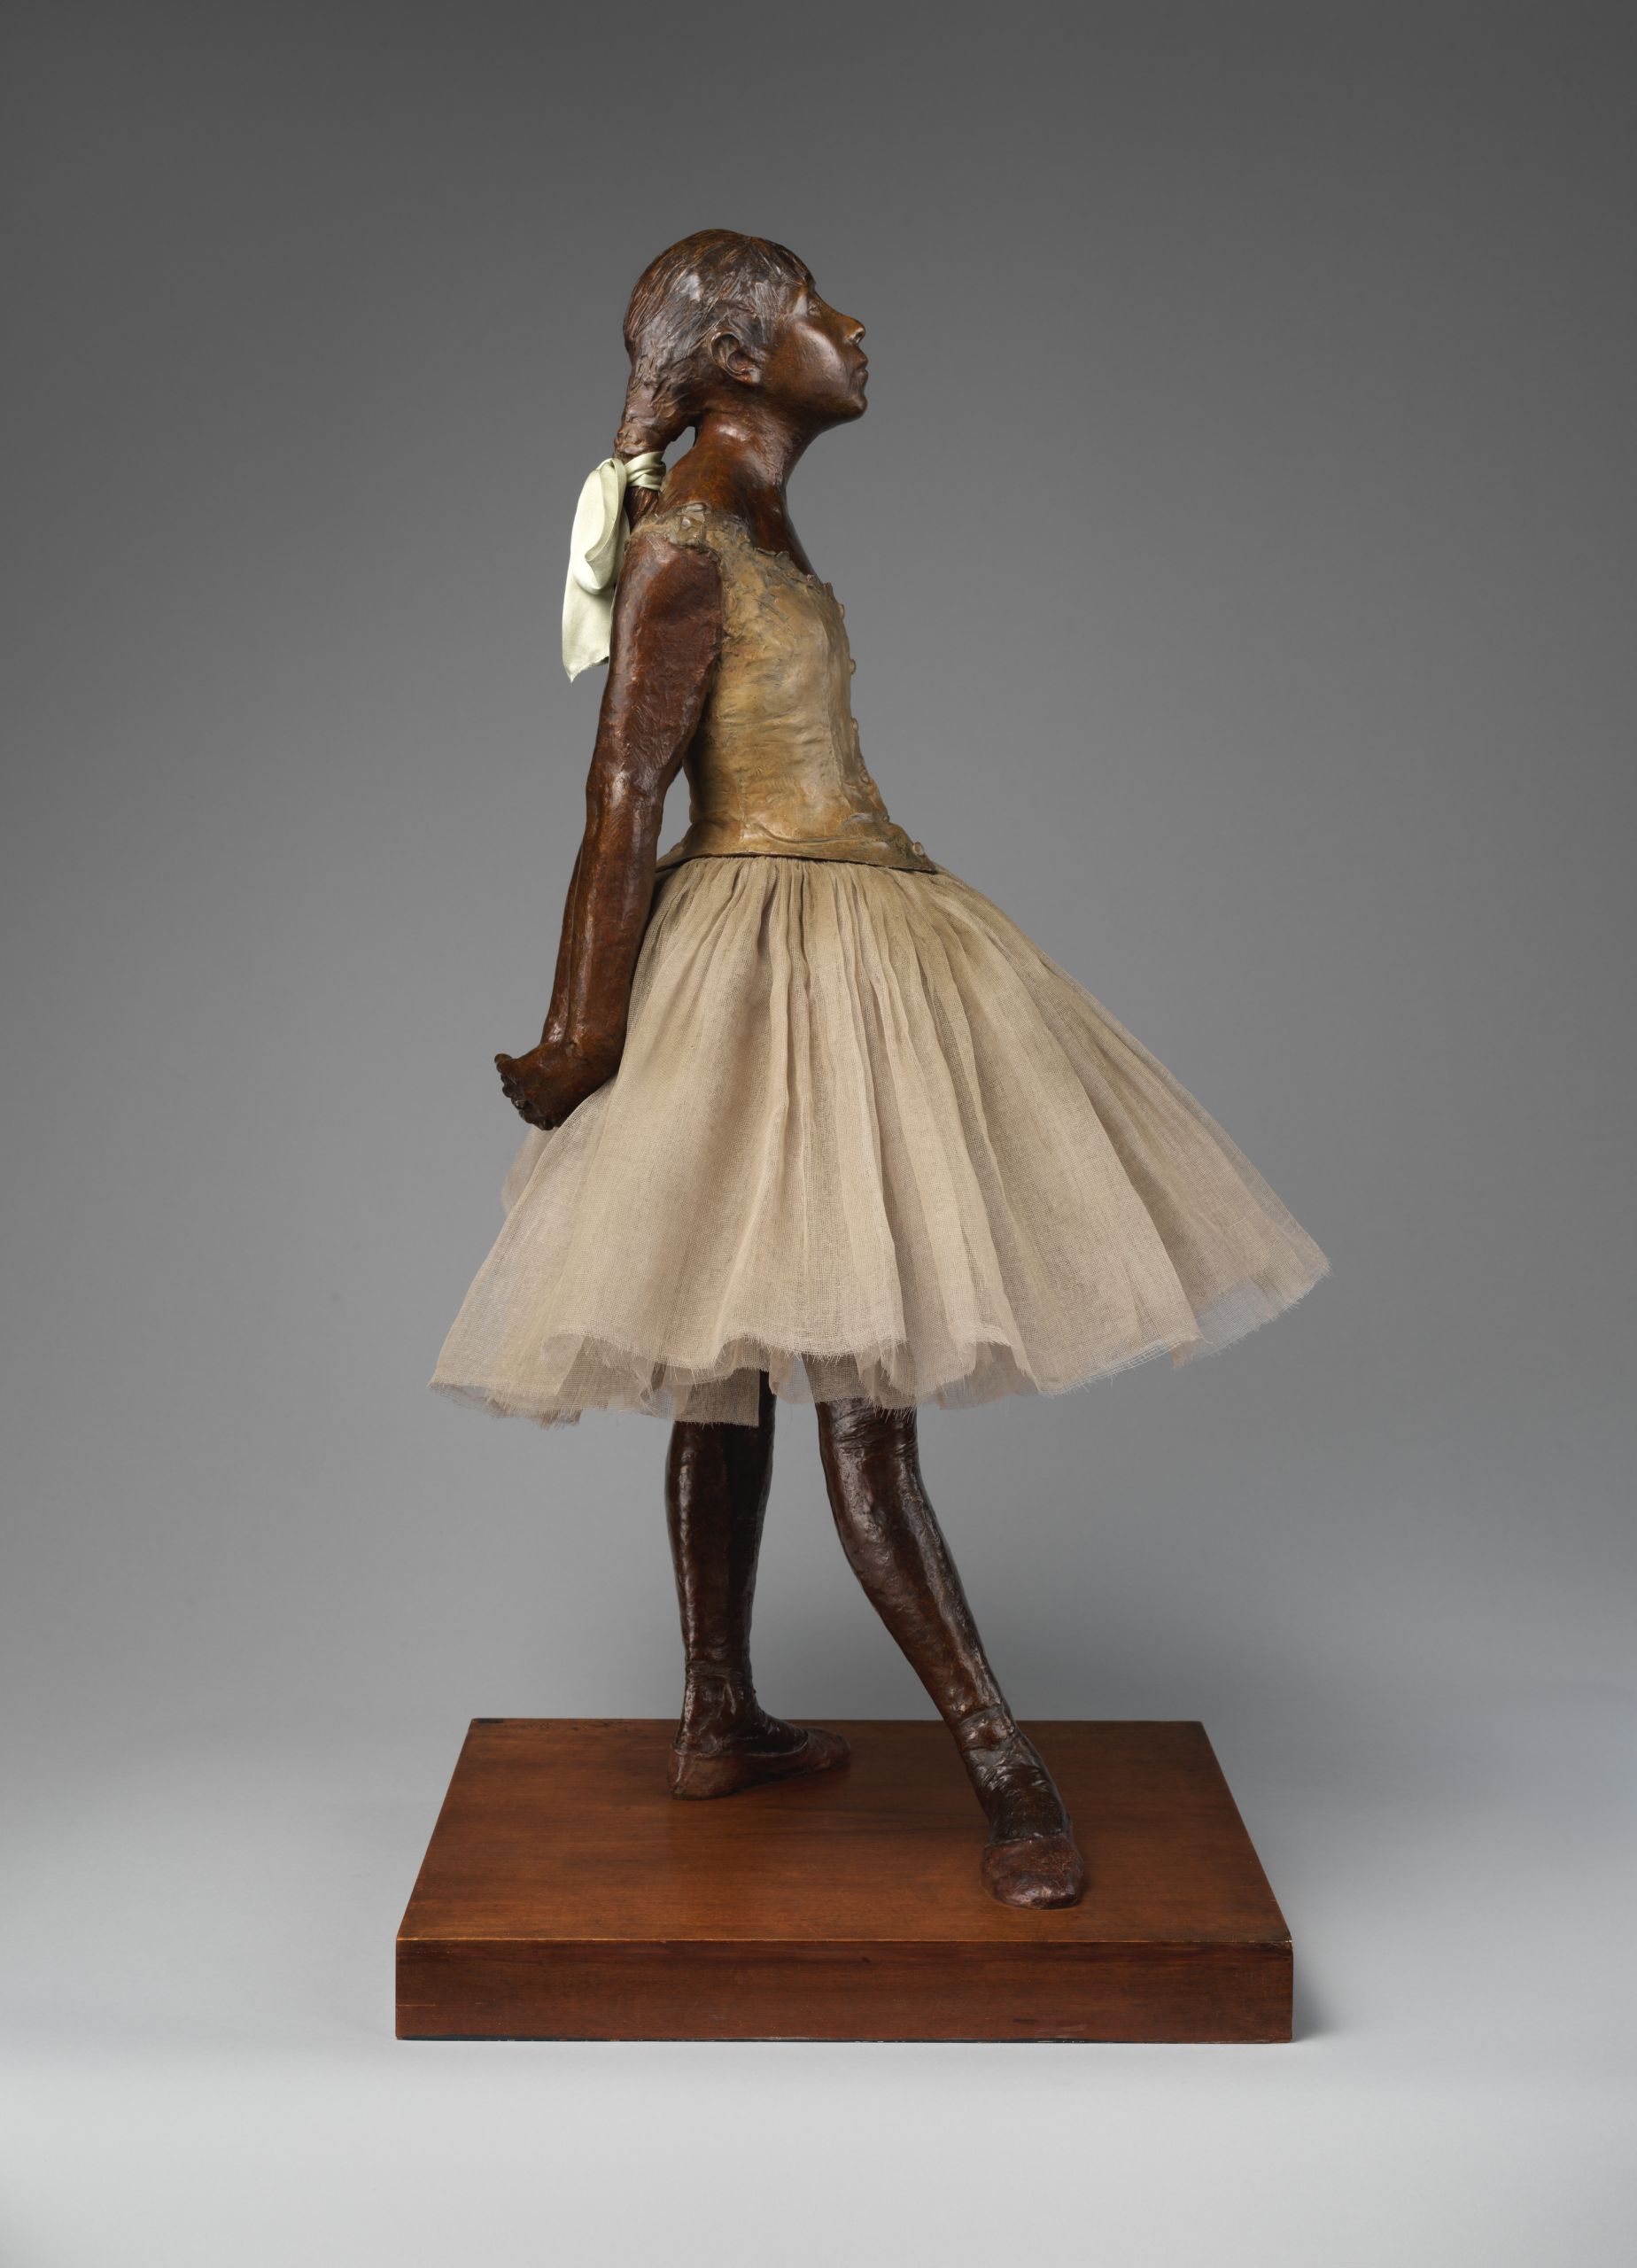  Μικρή χορεύτρια δεκατεσσάρων χρόνων, Εντγκάρ Ντεγκά (1881)Photo Credits: Wikimedia Commons